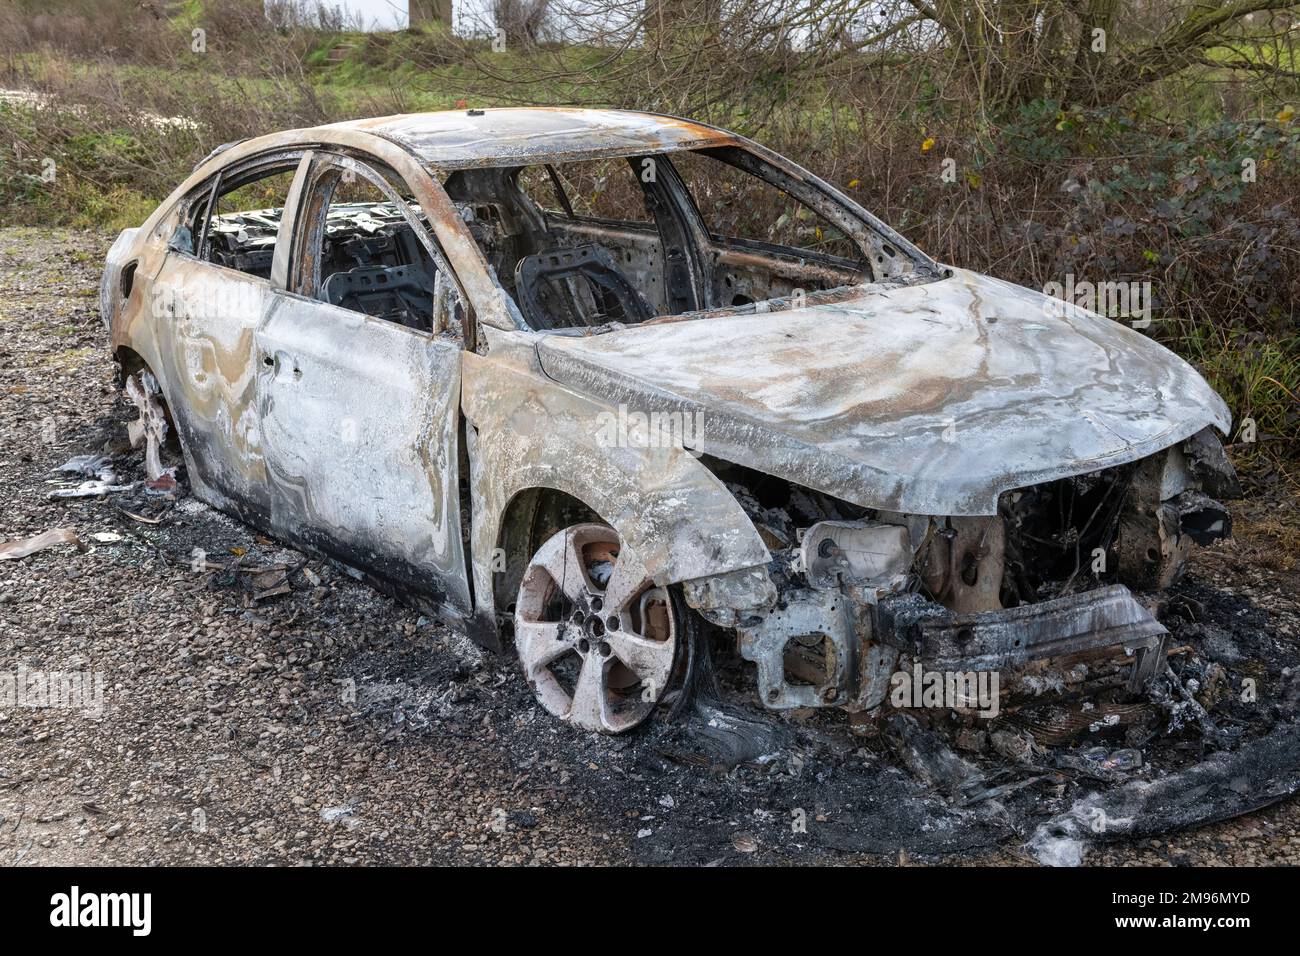 Une voiture moderne brûlée abandonnée dans les déchets au Royaume-Uni Banque D'Images